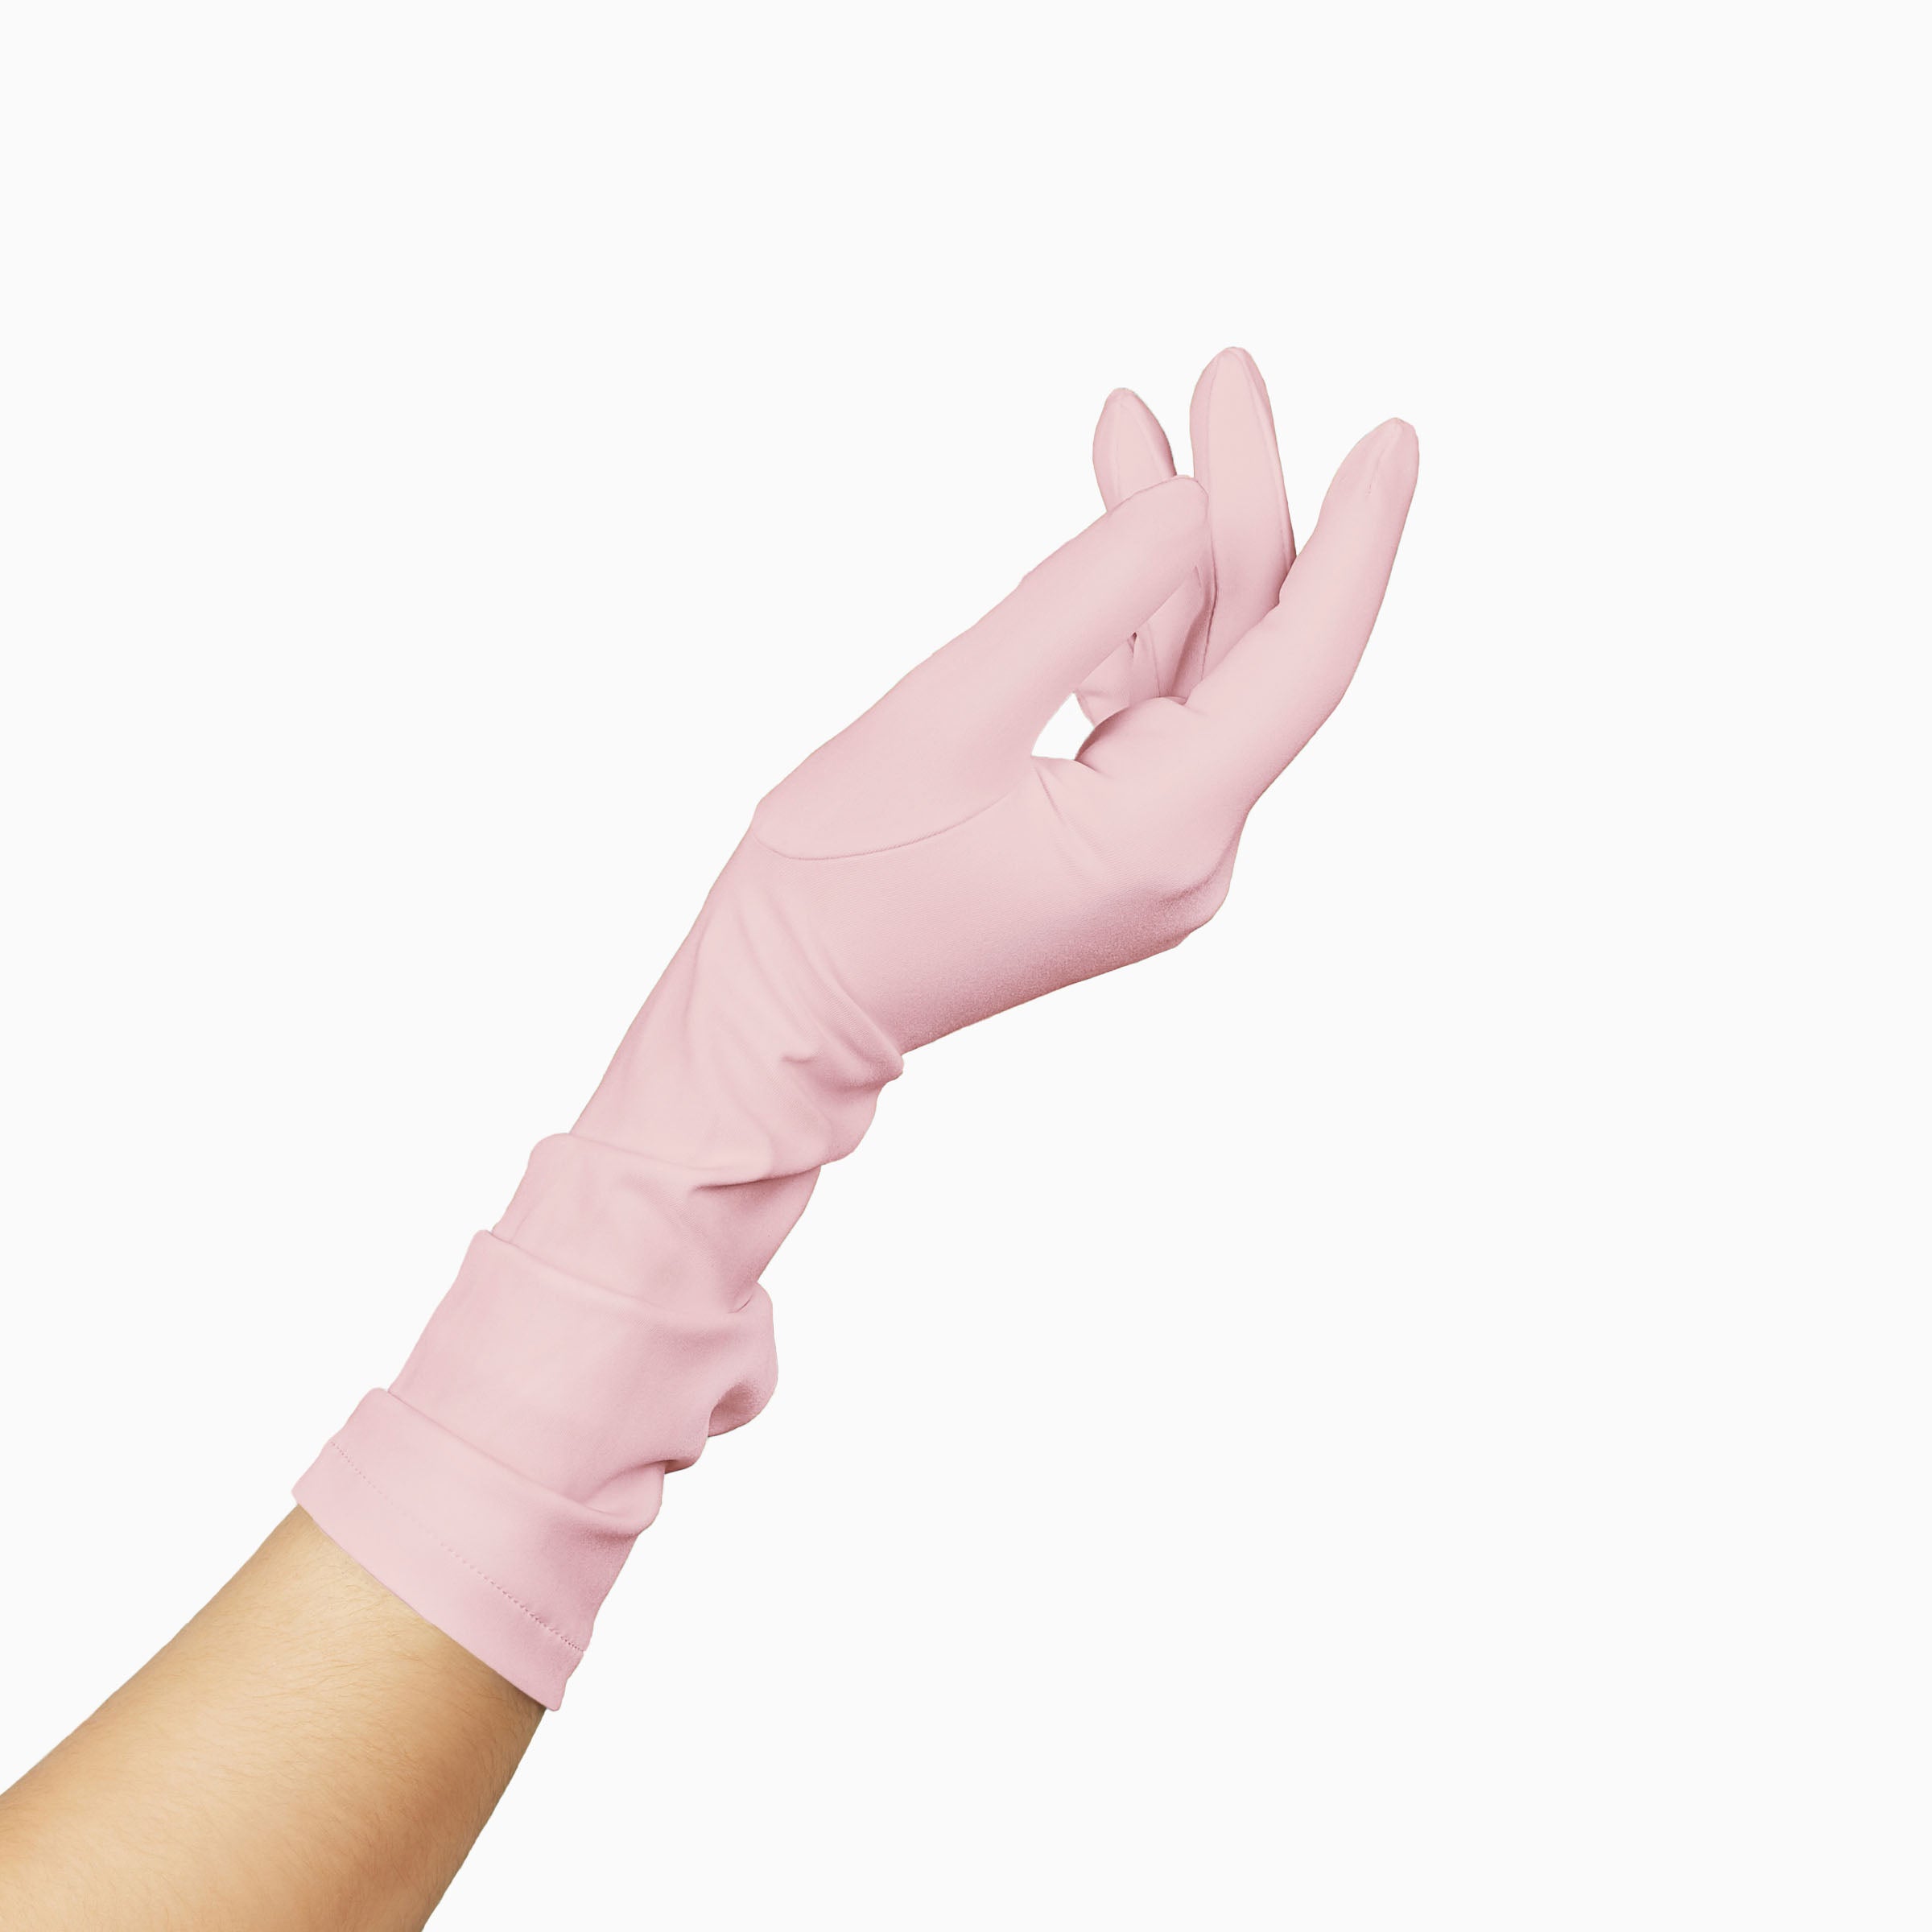 THE JILL pink women's glove.